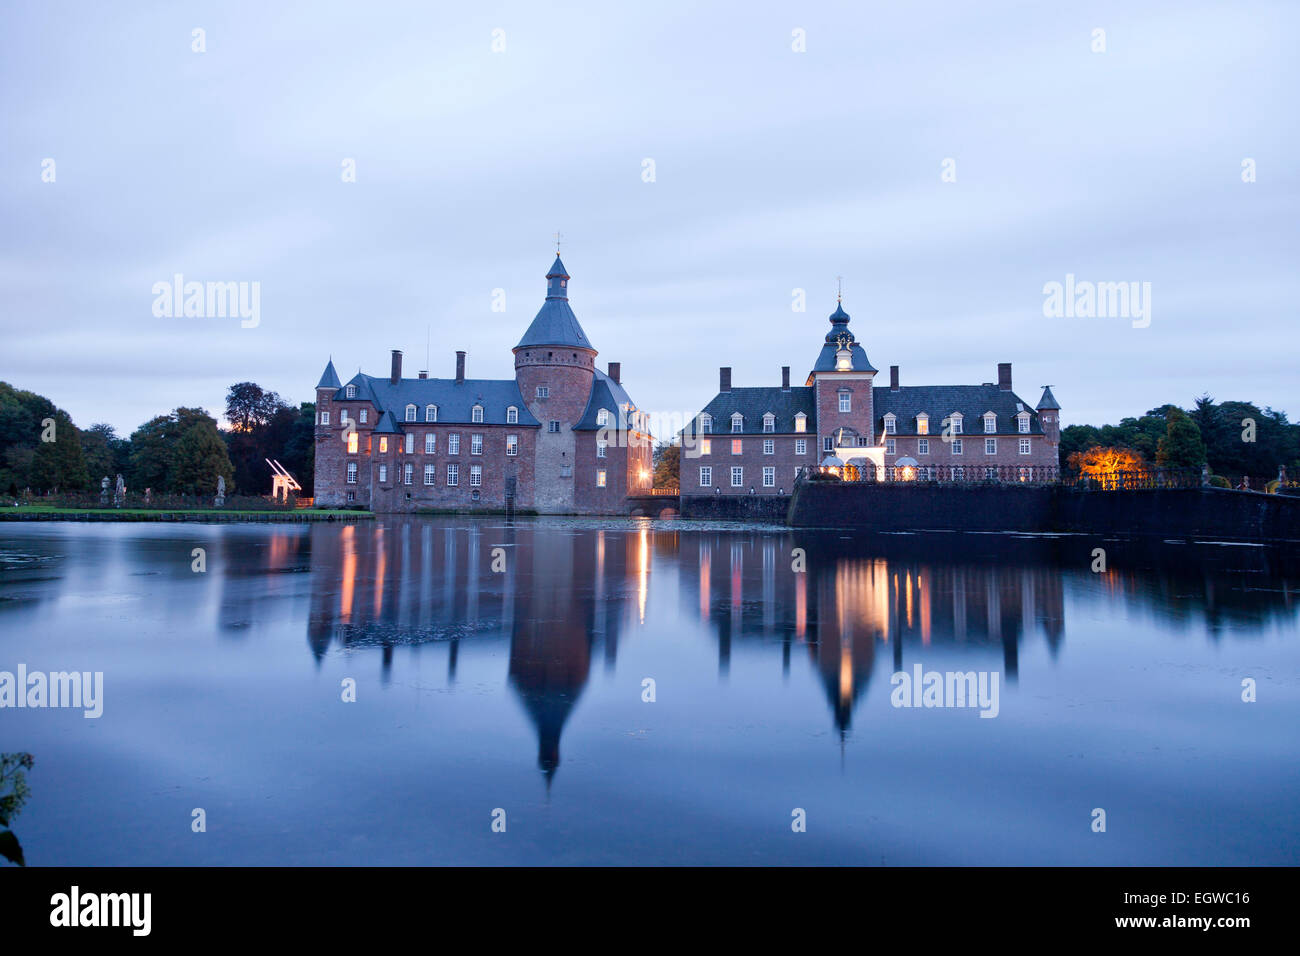 Burg Anholt, moated castle, Isselburg, North Rhine-Westphalia, Germany, Europe Stock Photo